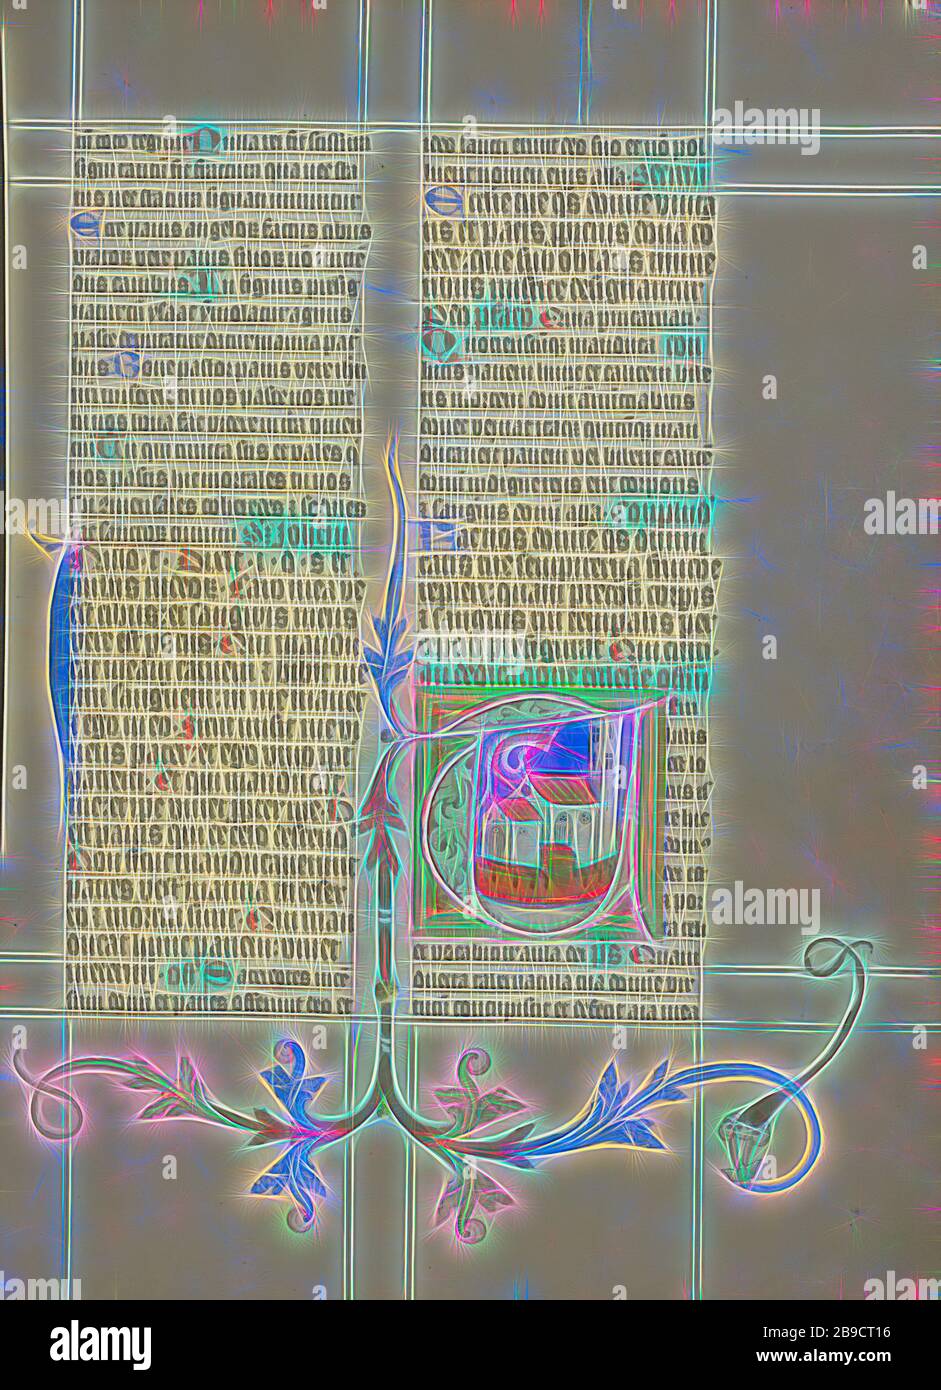 Initiale T: Une Eglise, Maître Michael (autrichien, actif vers 1420 jusqu'au milieu du XVe siècle), Vienne, Autriche, vers 1420 - 1430, couleurs de Tempera, feuille d'or, et encre sur parchemin, feuille: 41,9 x 31 cm (16 1,2 x 12 3,16 po, repensé par Gibon, design de gaie chaleureuse de luminosité et de rayonnement de rayons lumineux. L'art classique réinventé avec une touche moderne. La photographie inspirée du futurisme, qui embrasse l'énergie dynamique de la technologie moderne, du mouvement, de la vitesse et révolutionne la culture. Banque D'Images